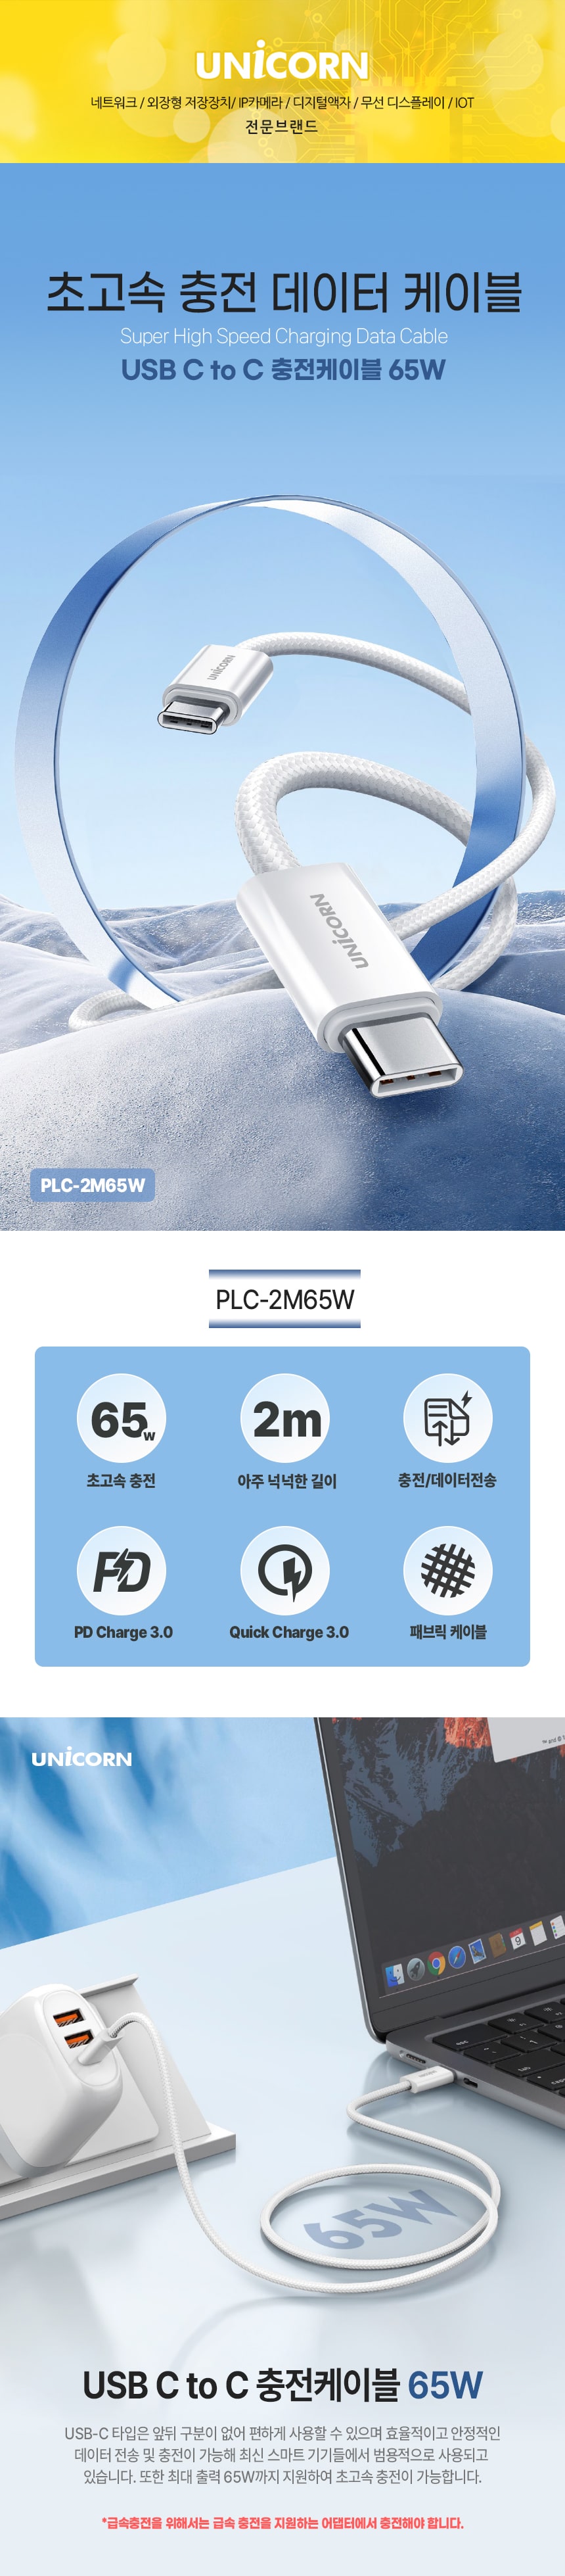 PLC-2M65W-1.jpg